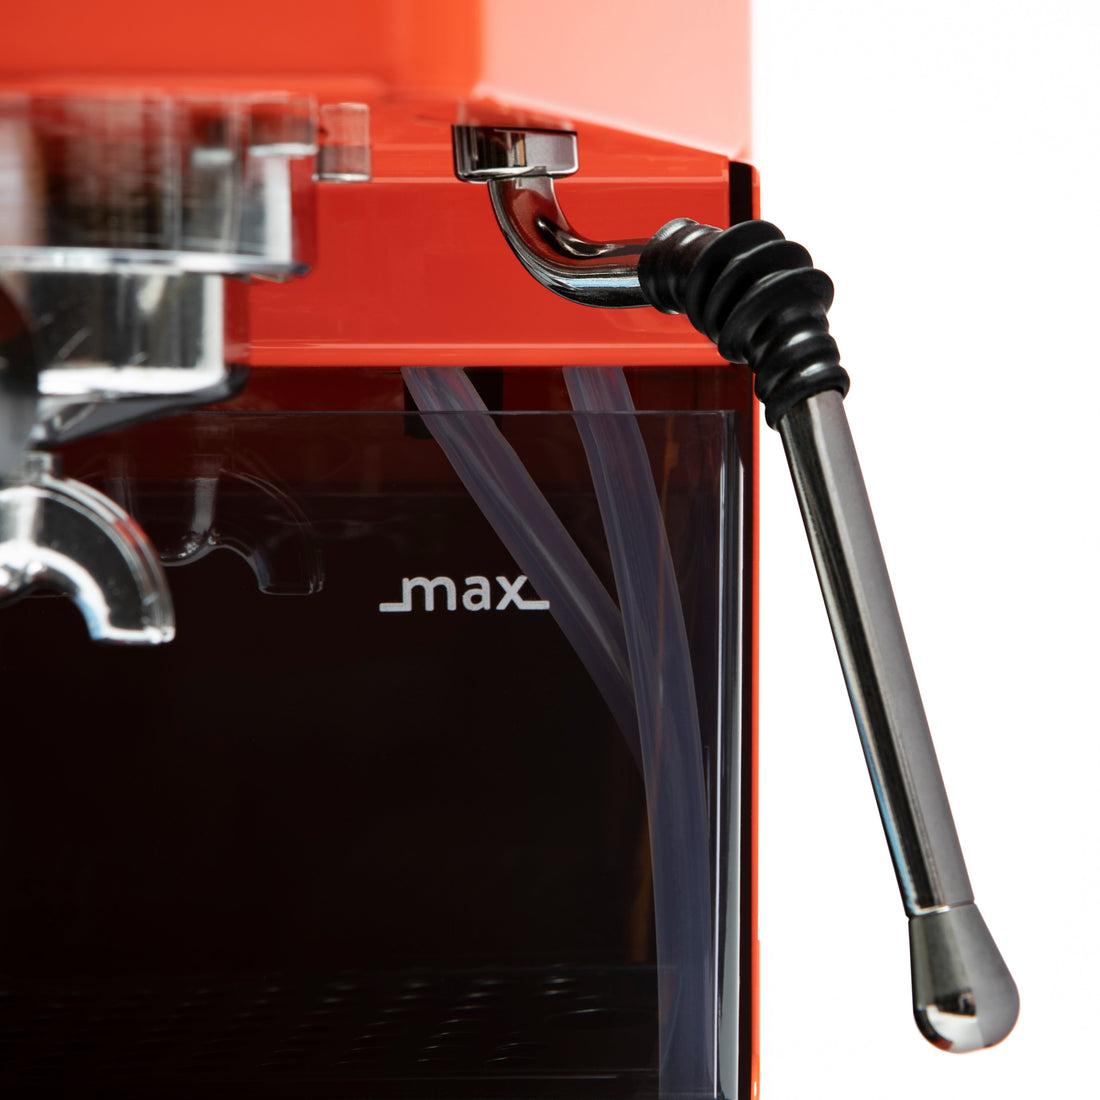 Gaggia Classic Evo Pro Espresso Machine in Lobster Red with Blackened Oak